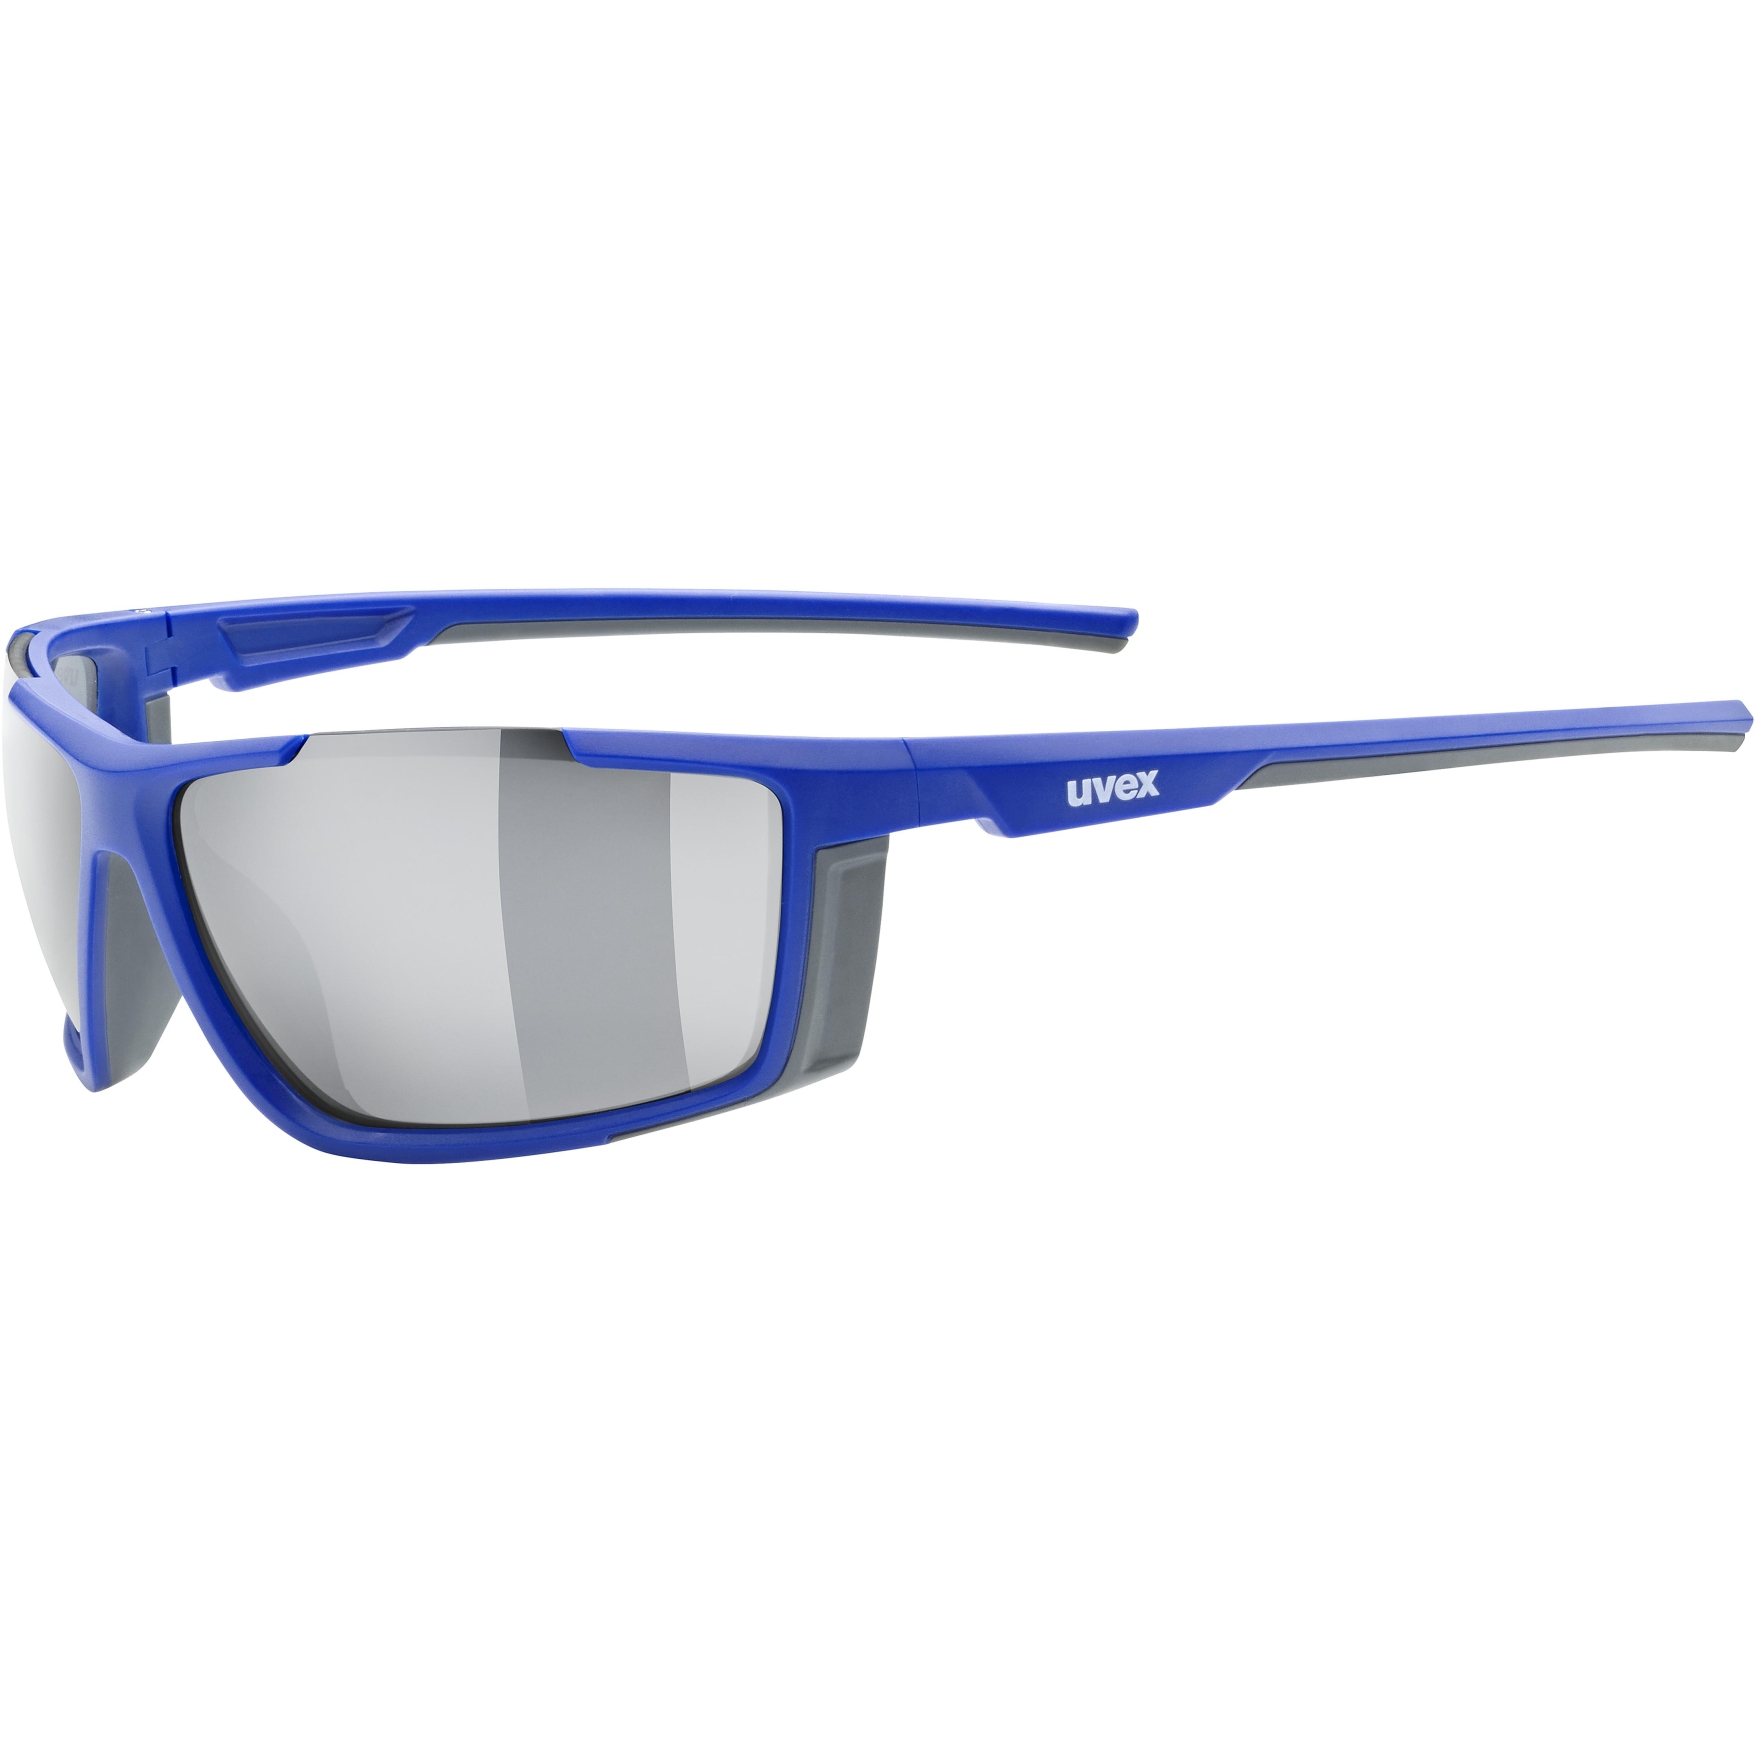 Produktbild von Uvex sportstyle 310 Brille - blue mat/mirror silver